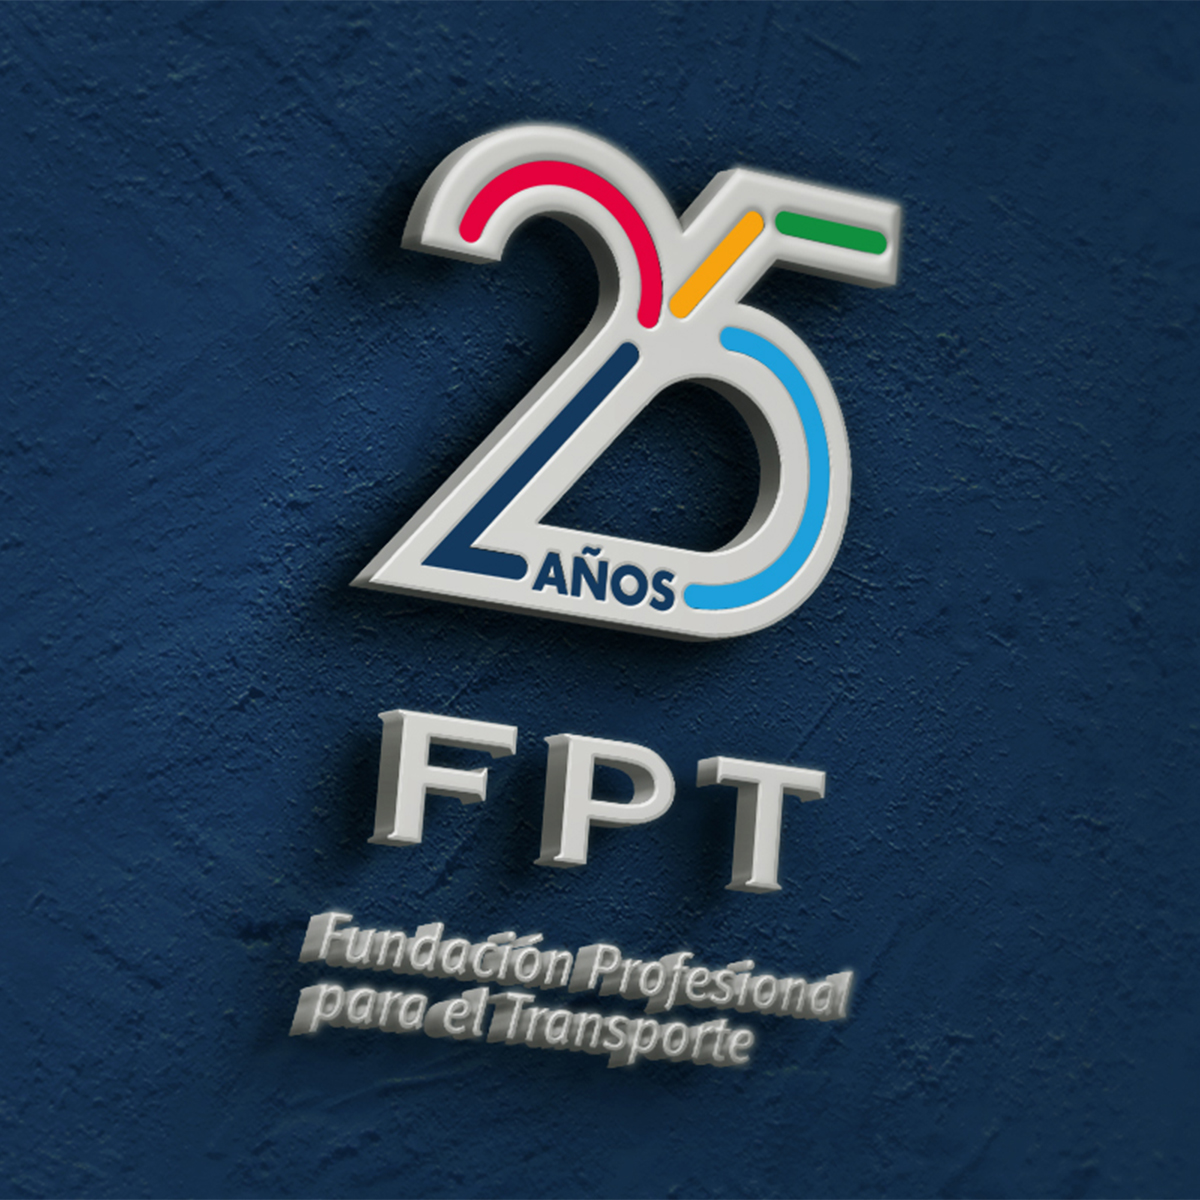 FPT - Fundación Profesional para el Transporte